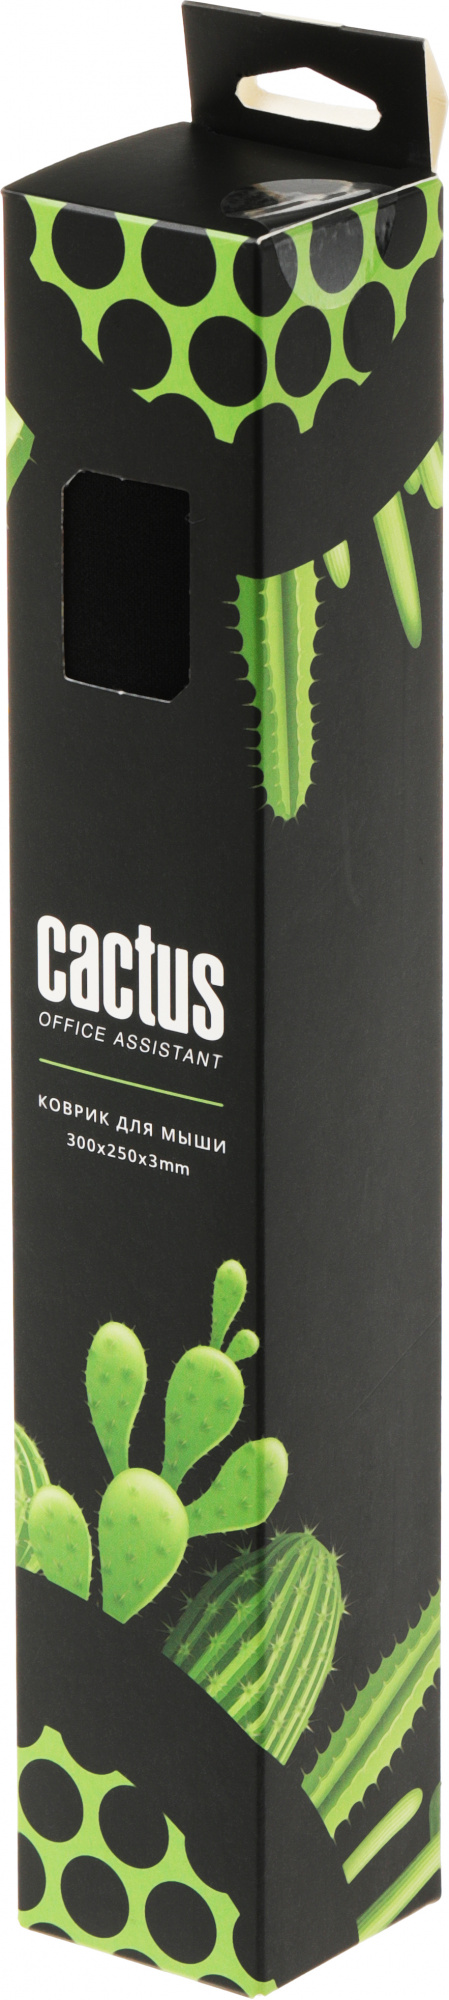 Коврик для мыши Cactus Black 300x250x3мм (CS-MP-D01M)